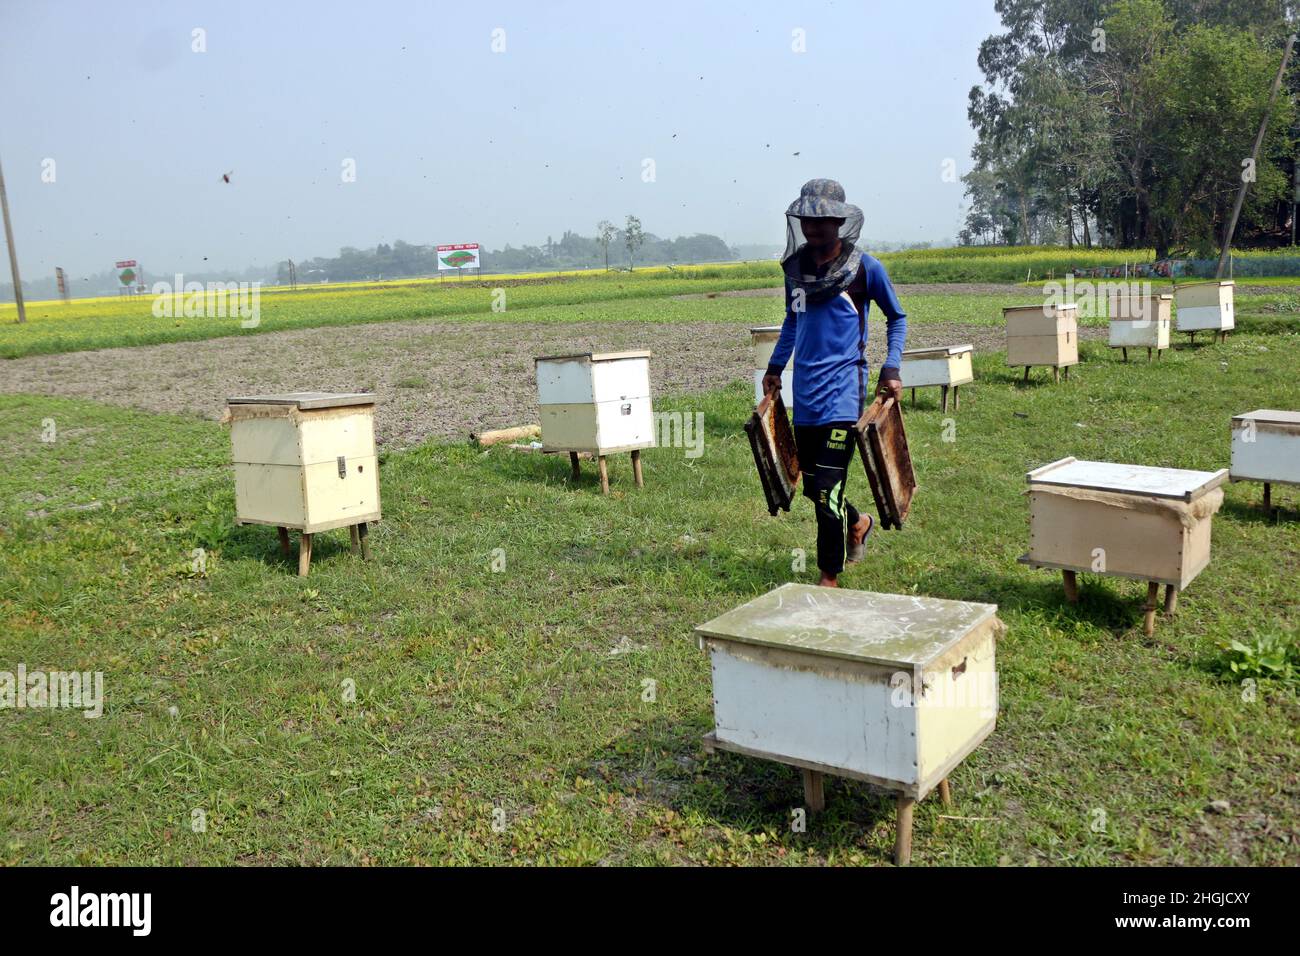 Apiculteurs lors de la collecte de nid d'abeille de la boîte spéciale pour extraire le miel produit par les abeilles dans un champ de Munshigonj.Selon le Banglad Banque D'Images